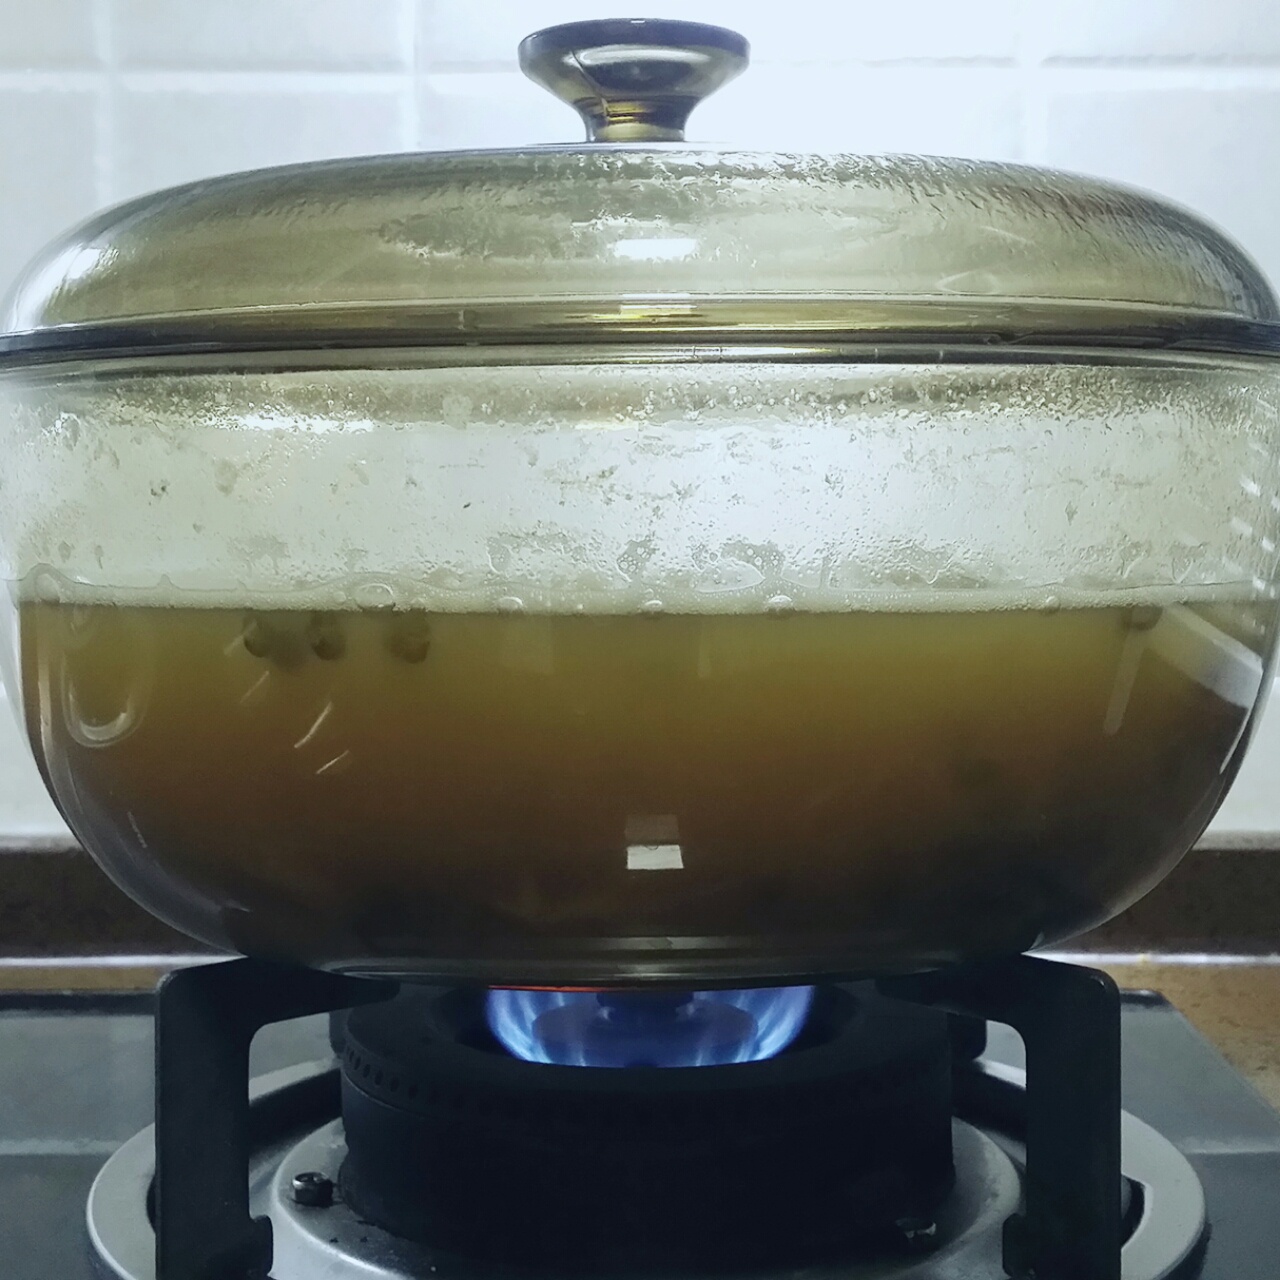 银耳百合绿豆汤